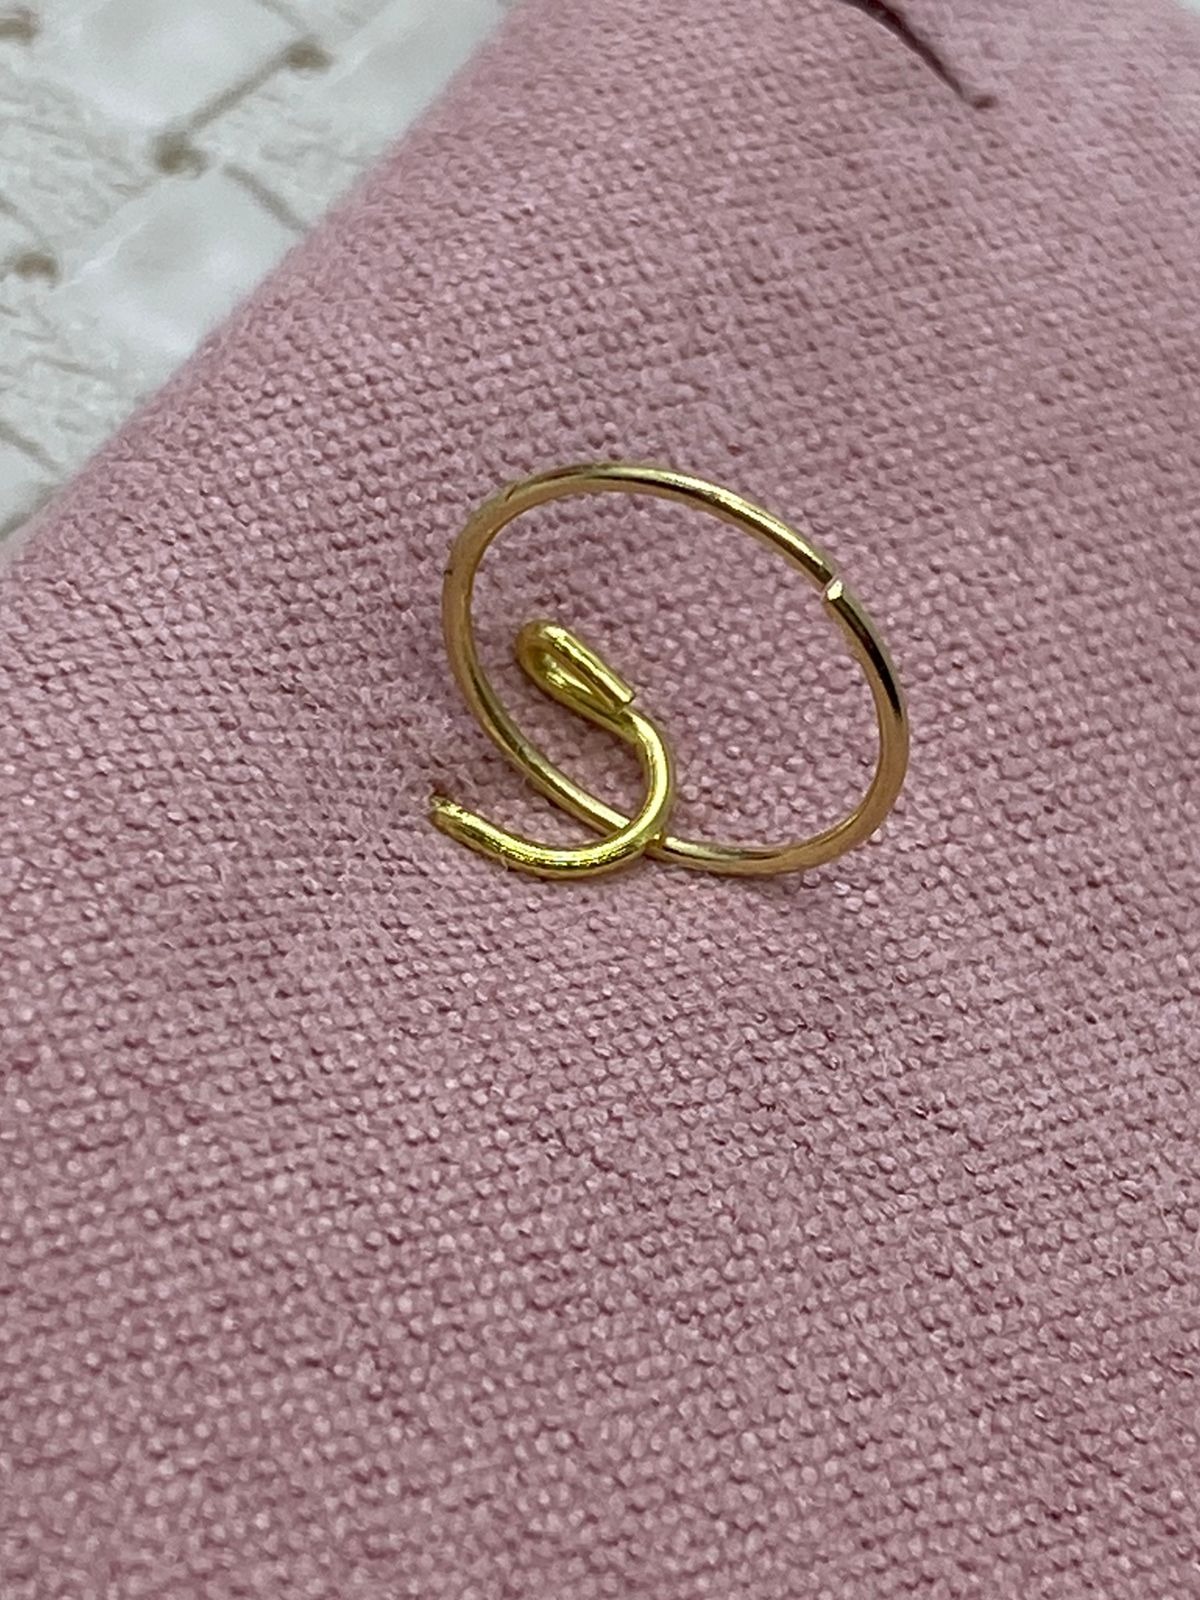 Piercing Orelha de Ouro 18K Pérolas Fio Veneziana - Joiasgold Mobile